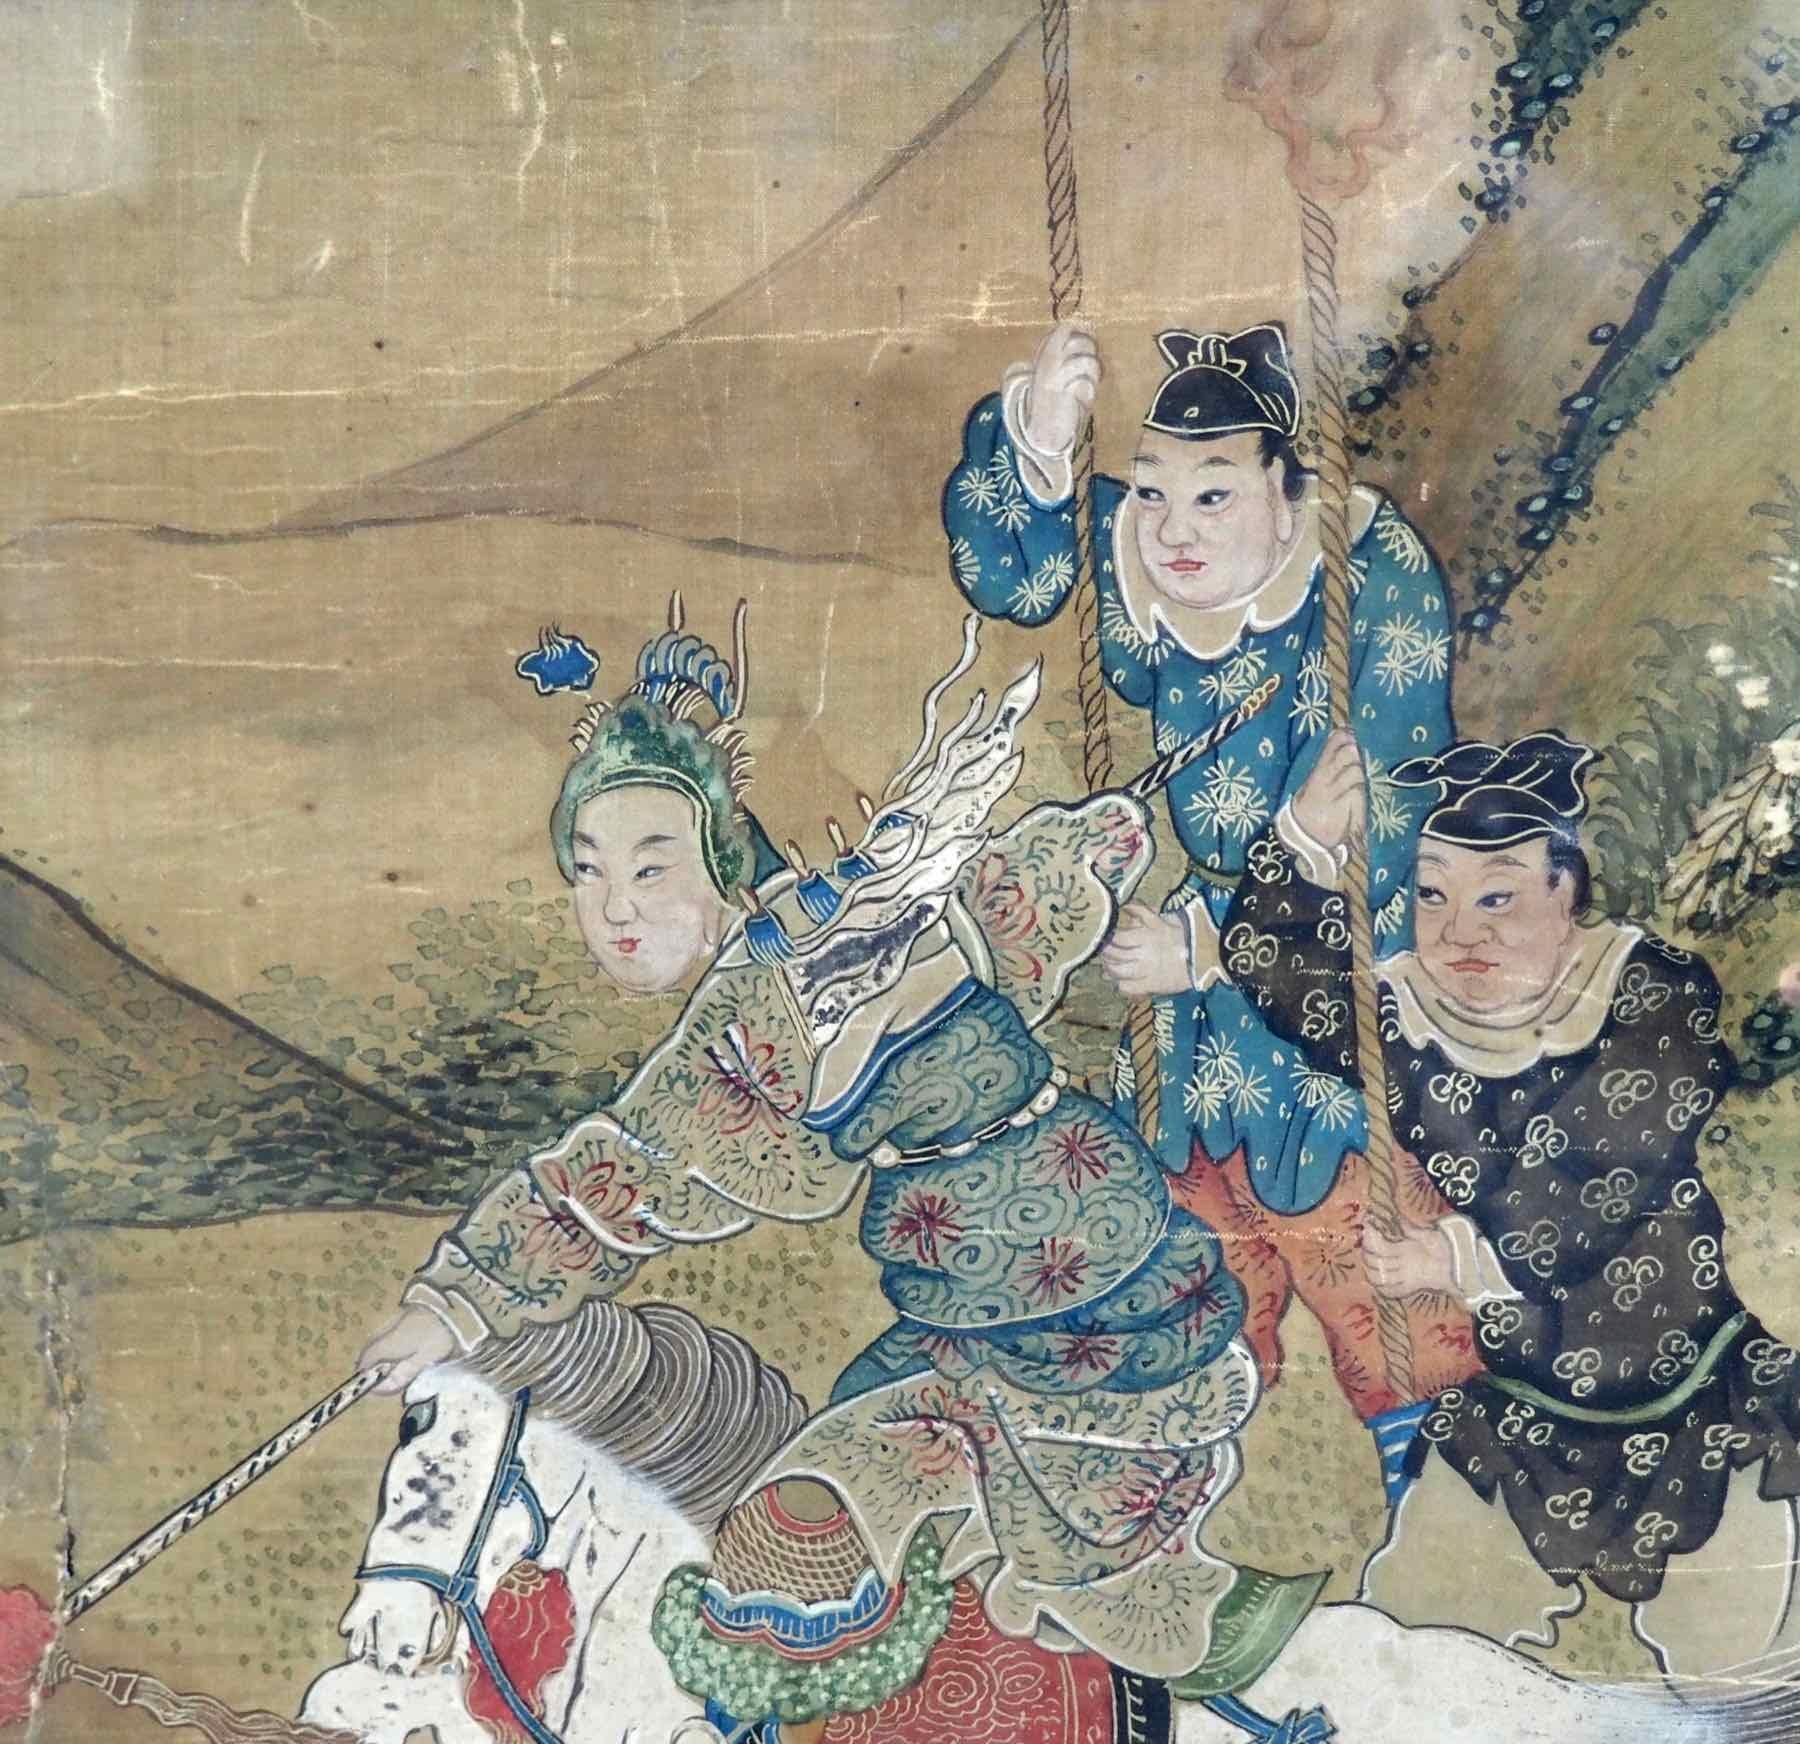 Belle peinture chinoise, XVIIIe siècle.
Mesures : H 32, L 45 cm
H 12.5, L 17.7 in.